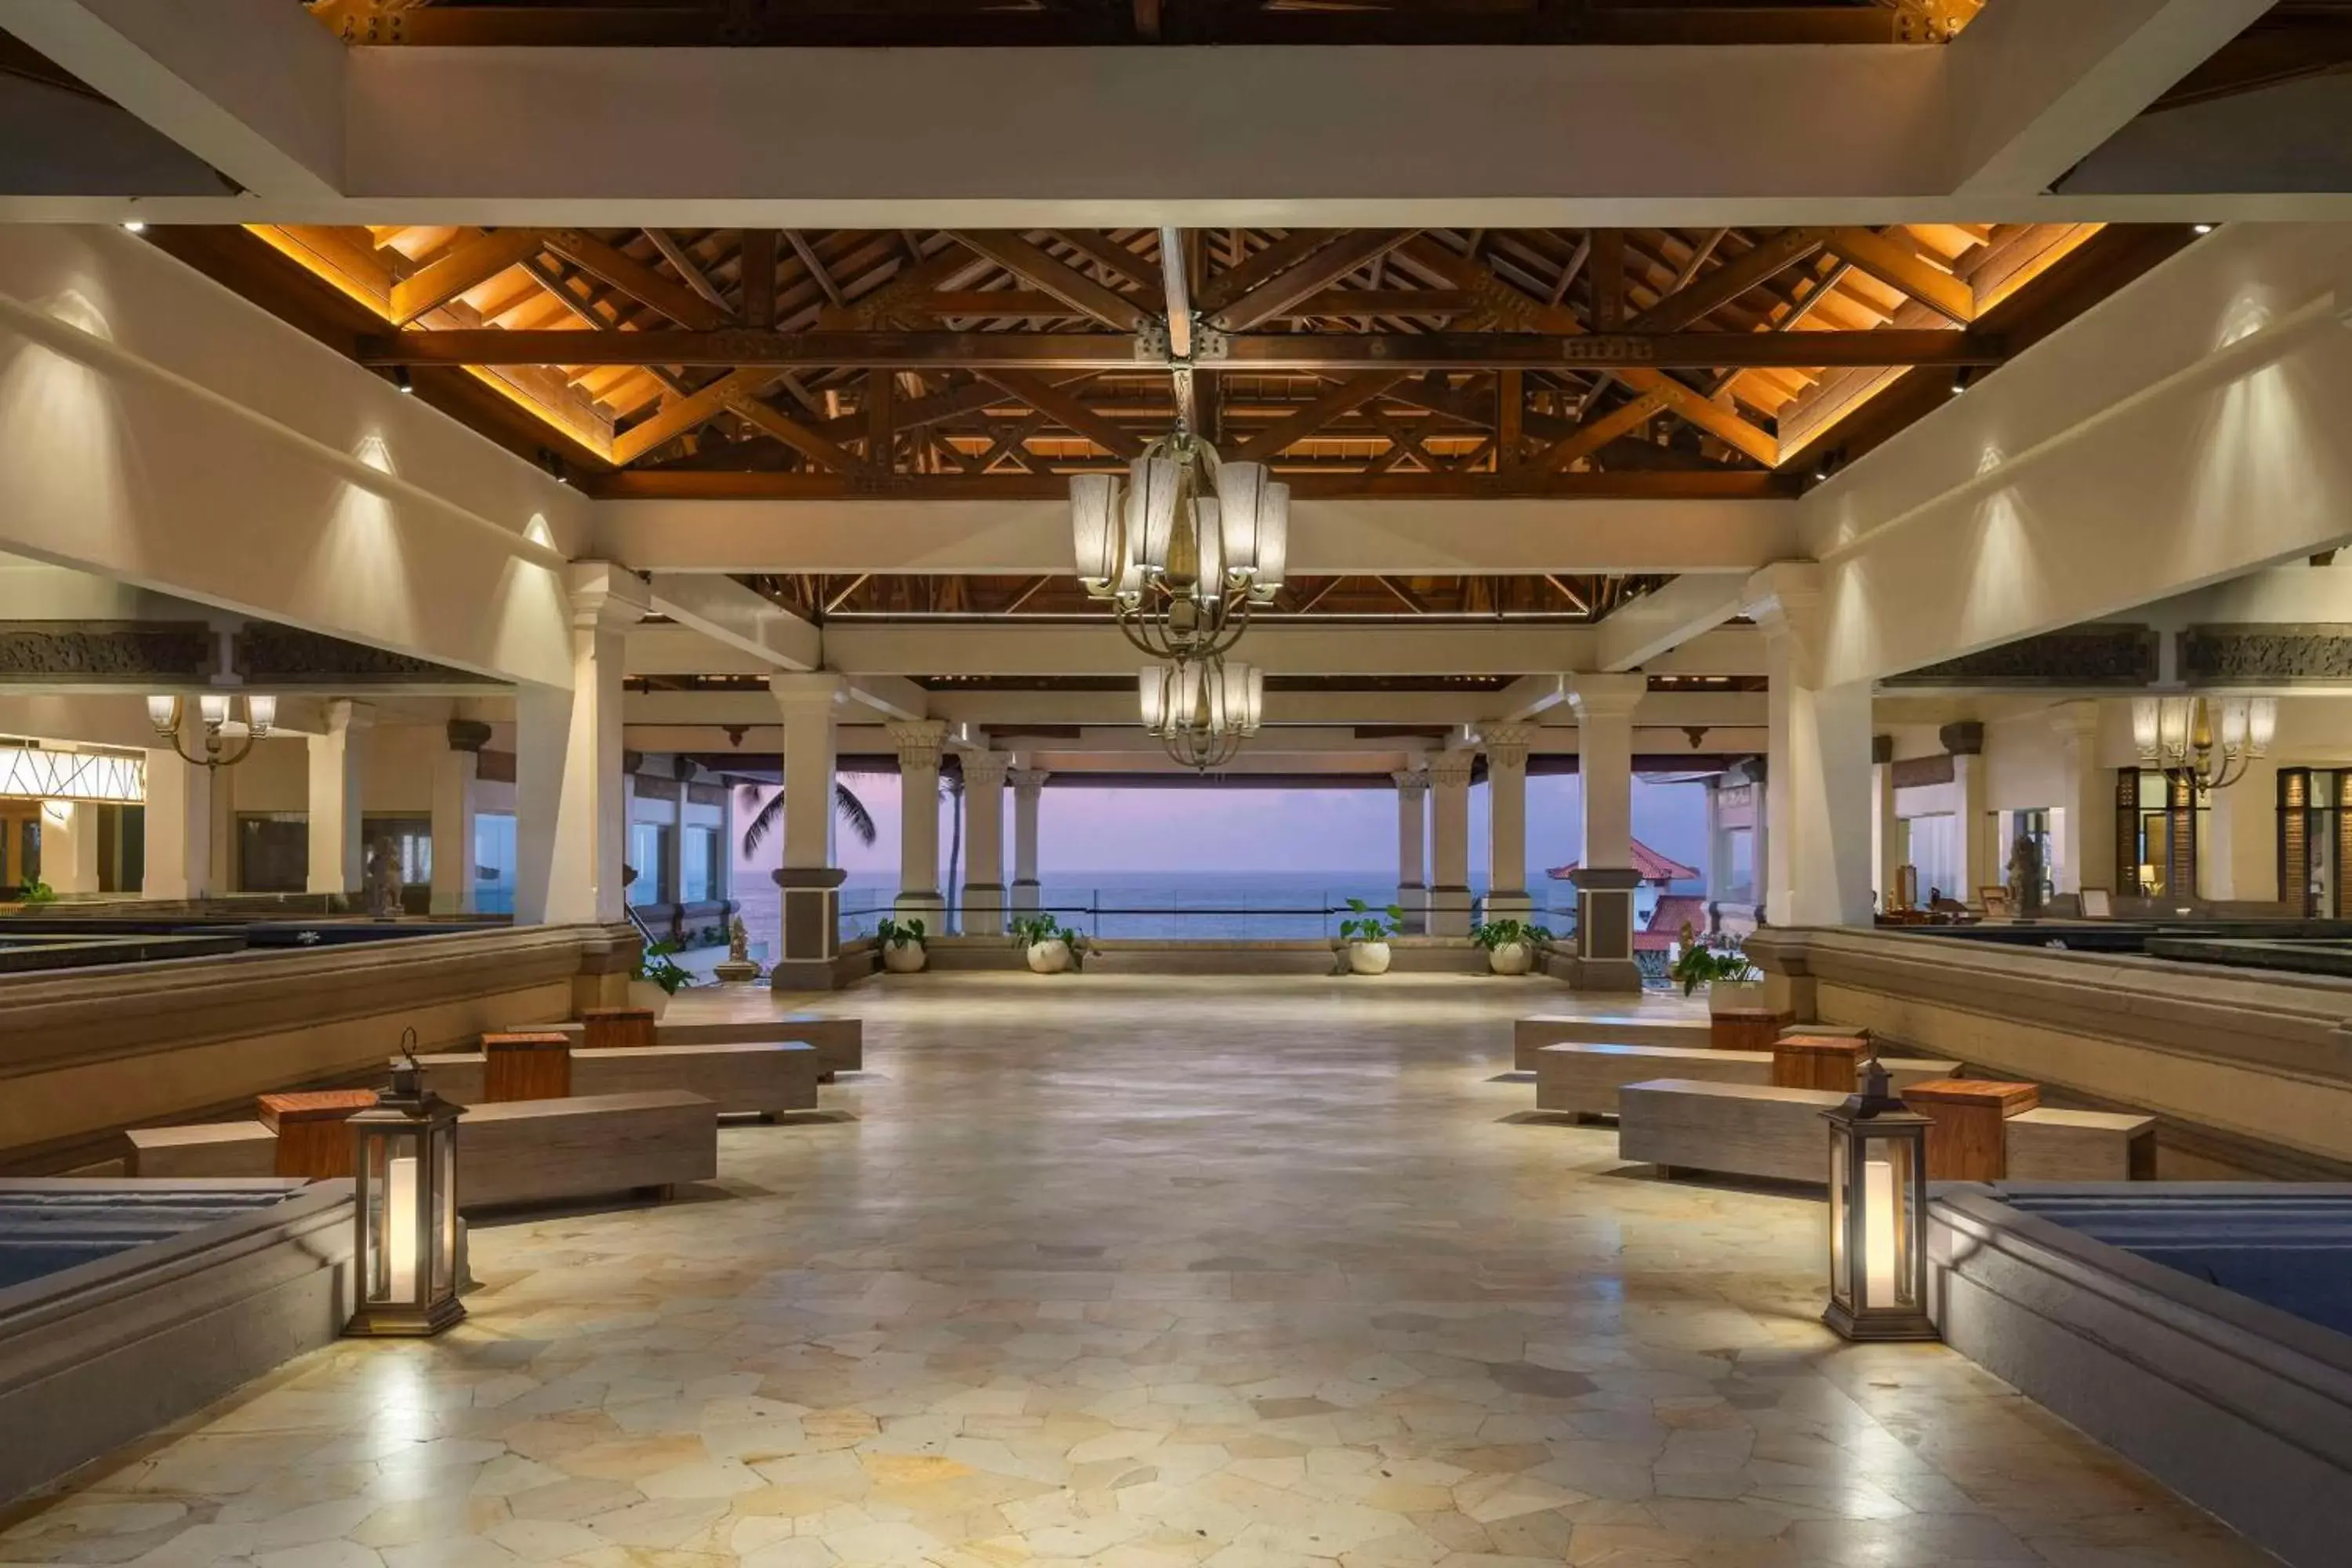 Lobby or reception in Hilton Bali Resort